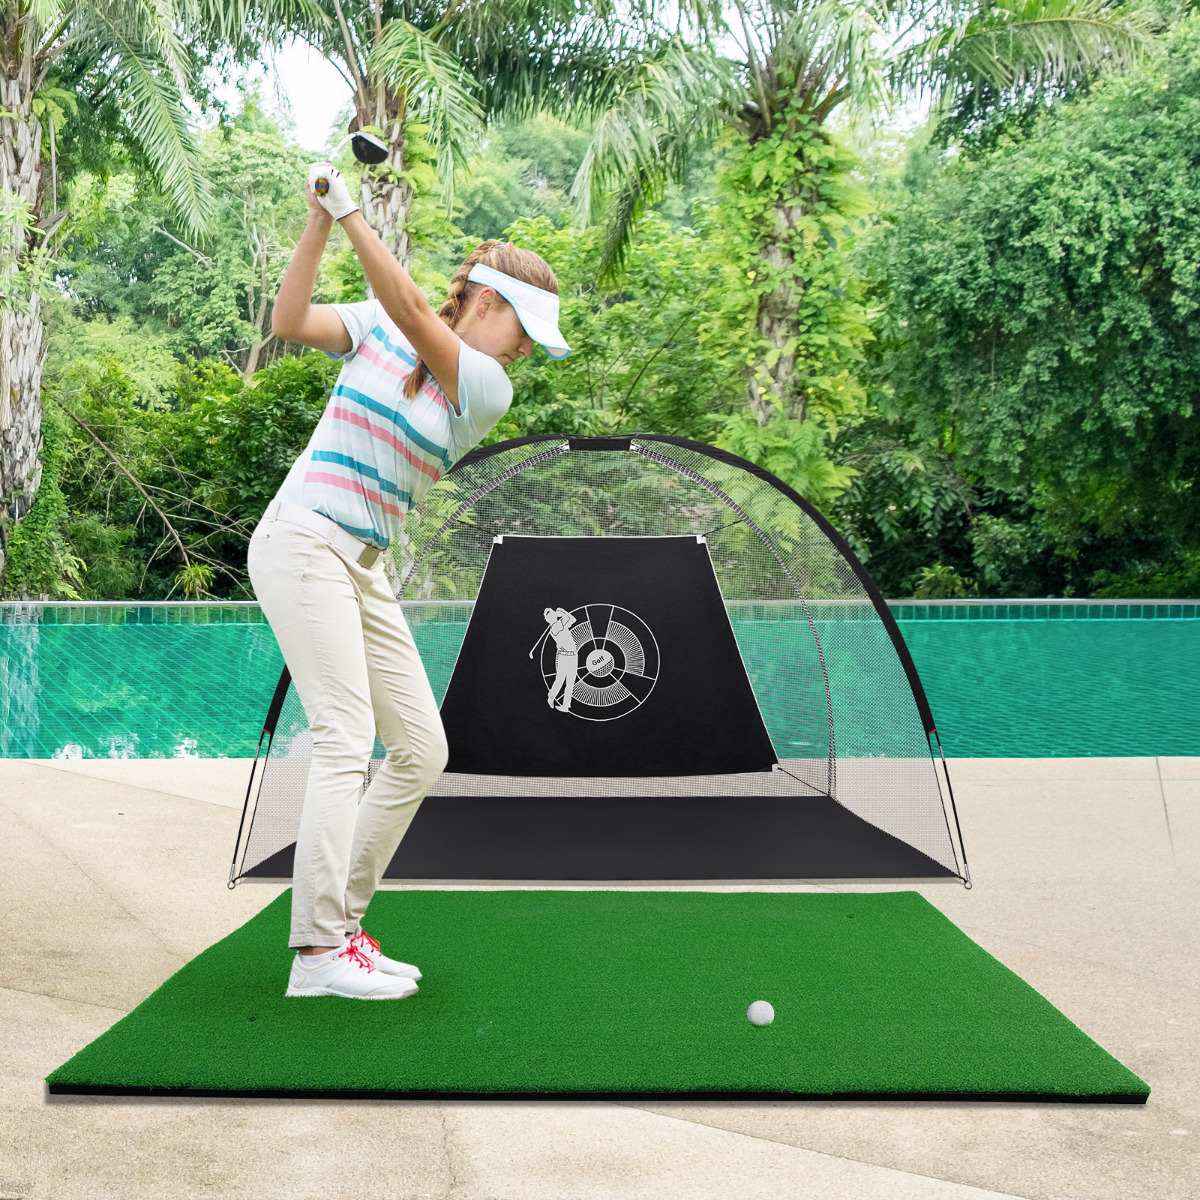 Golf Afslagmat Standaard Echt Gevoel Golf Oefenmat Golf Putting Mat 1,5 m x 1 m